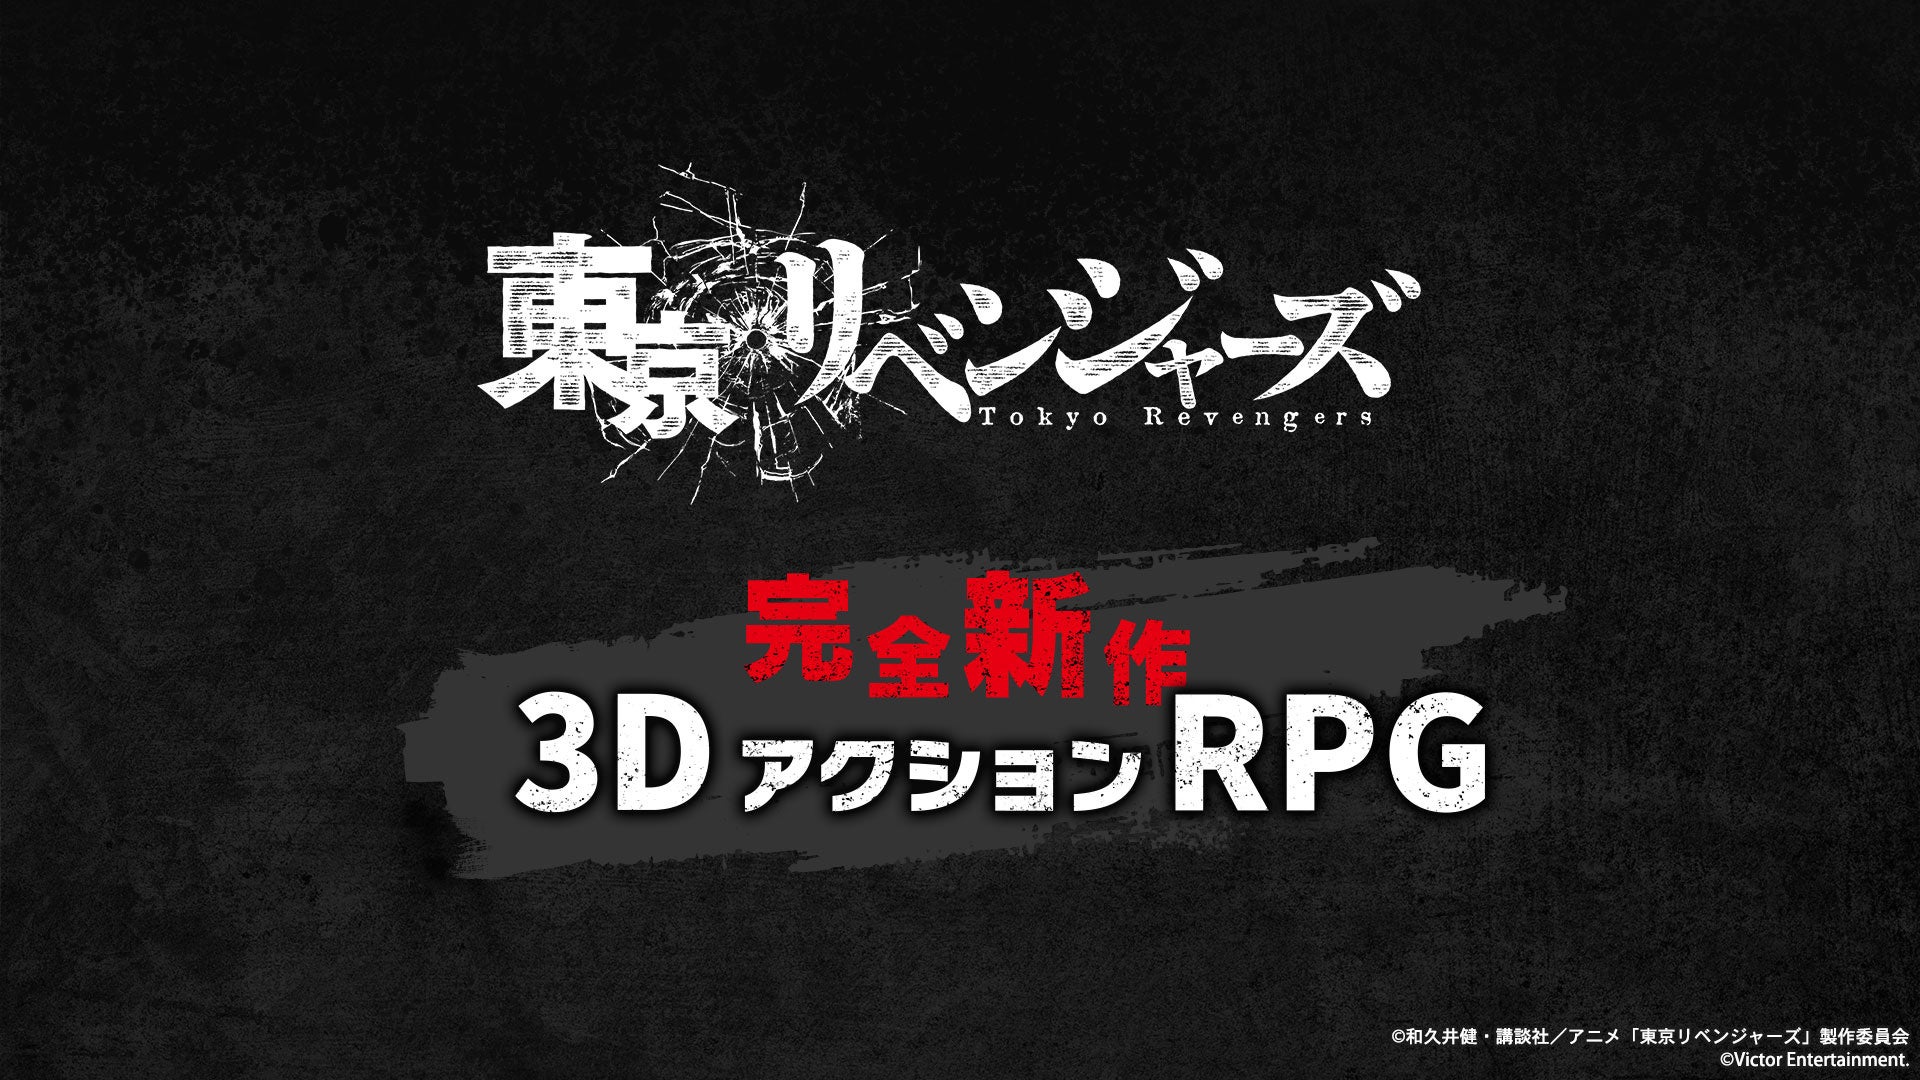 漫画やアニメ、映画で大人気のTVアニメ『東京リベンジャーズ』が完全新作3DアクションRPGとして登場